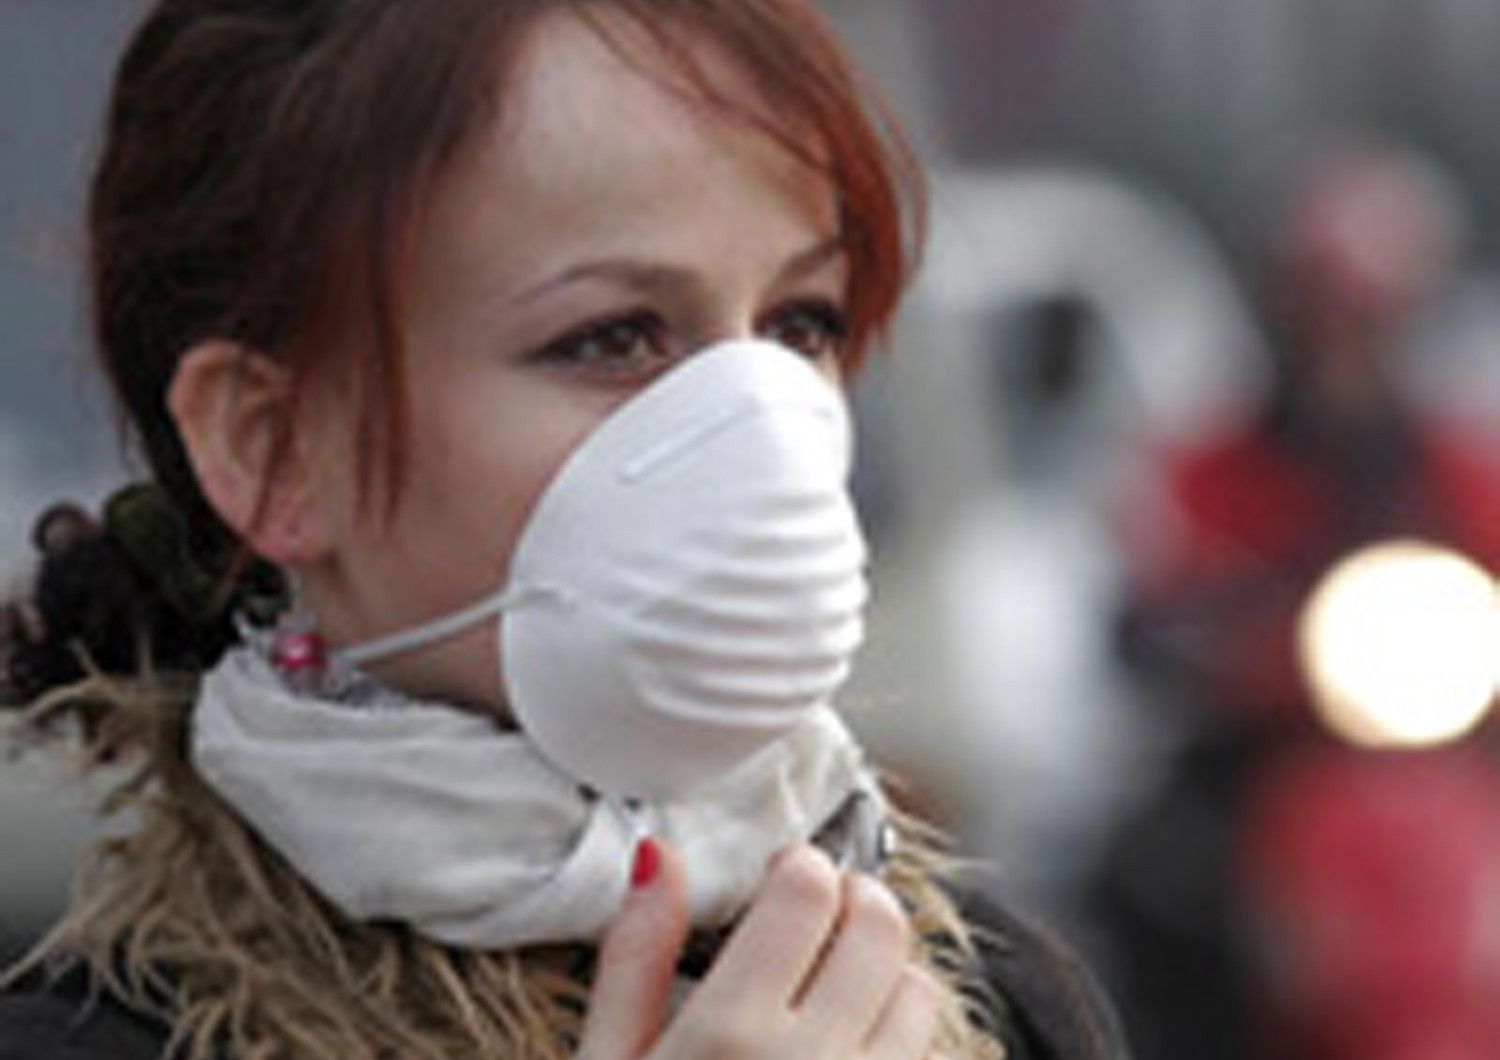 &nbsp;smog inquinamento mascherina antismog